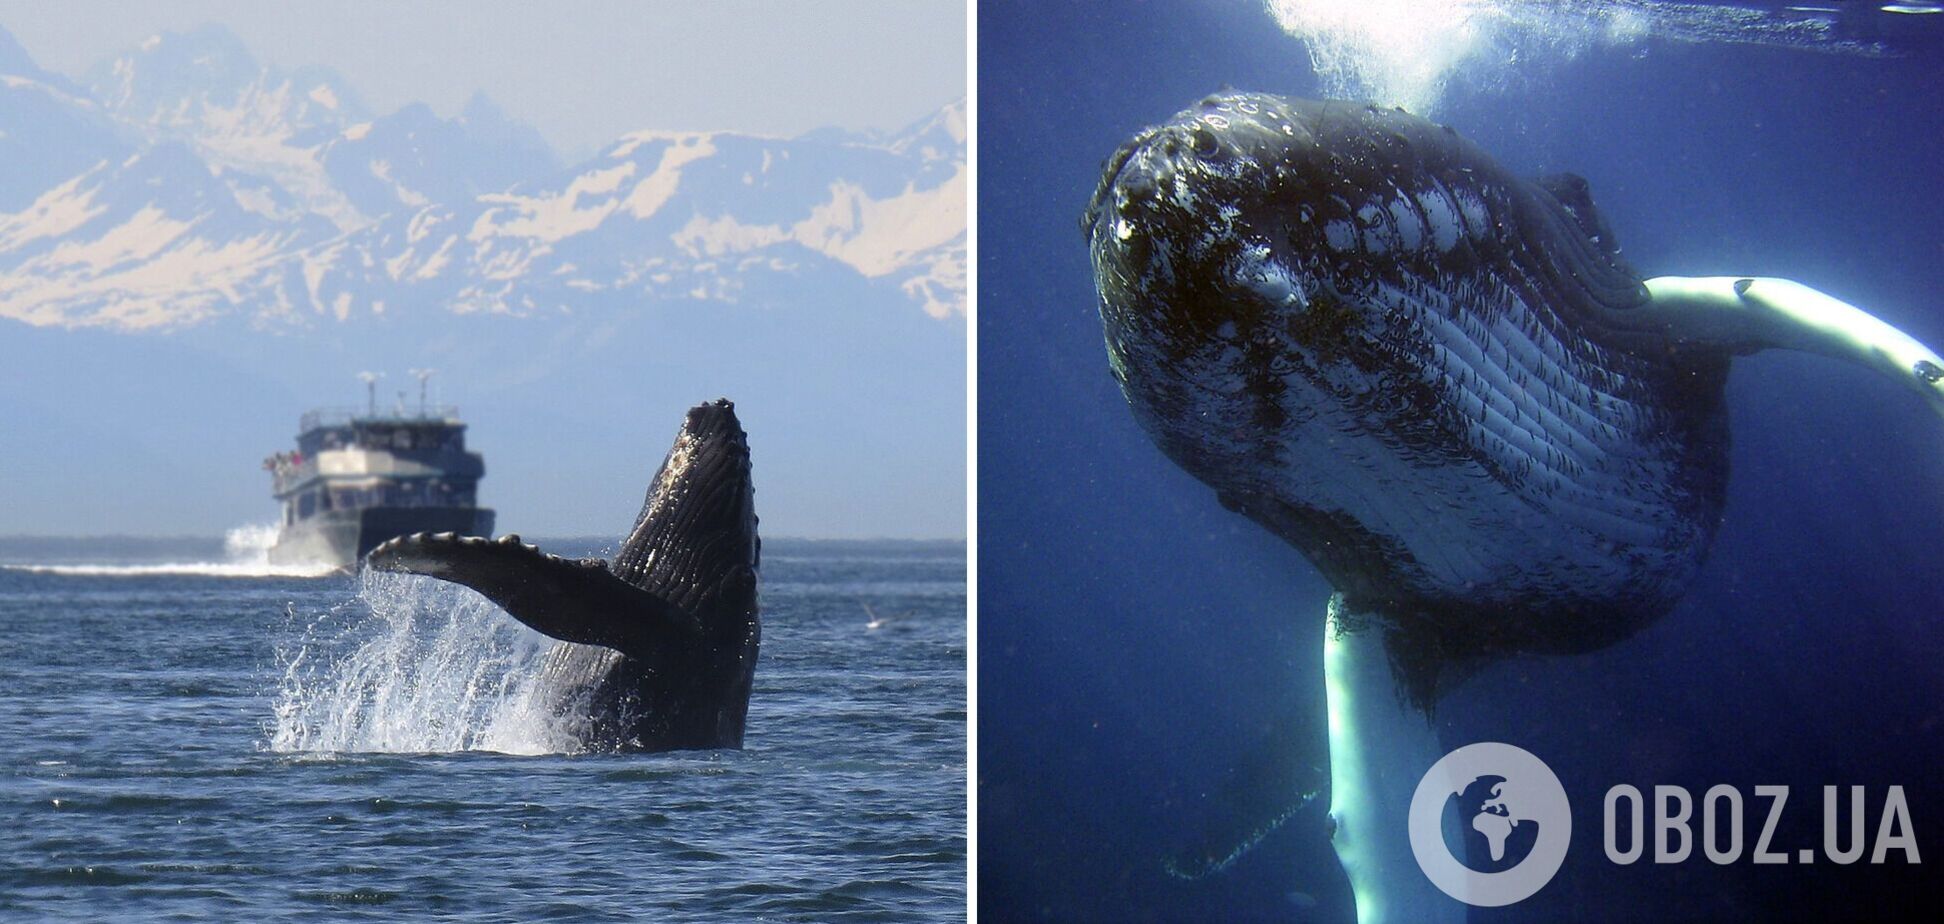 'Охота' на китов: куда поехать, чтобы полюбоваться грациозными морскими созданиями